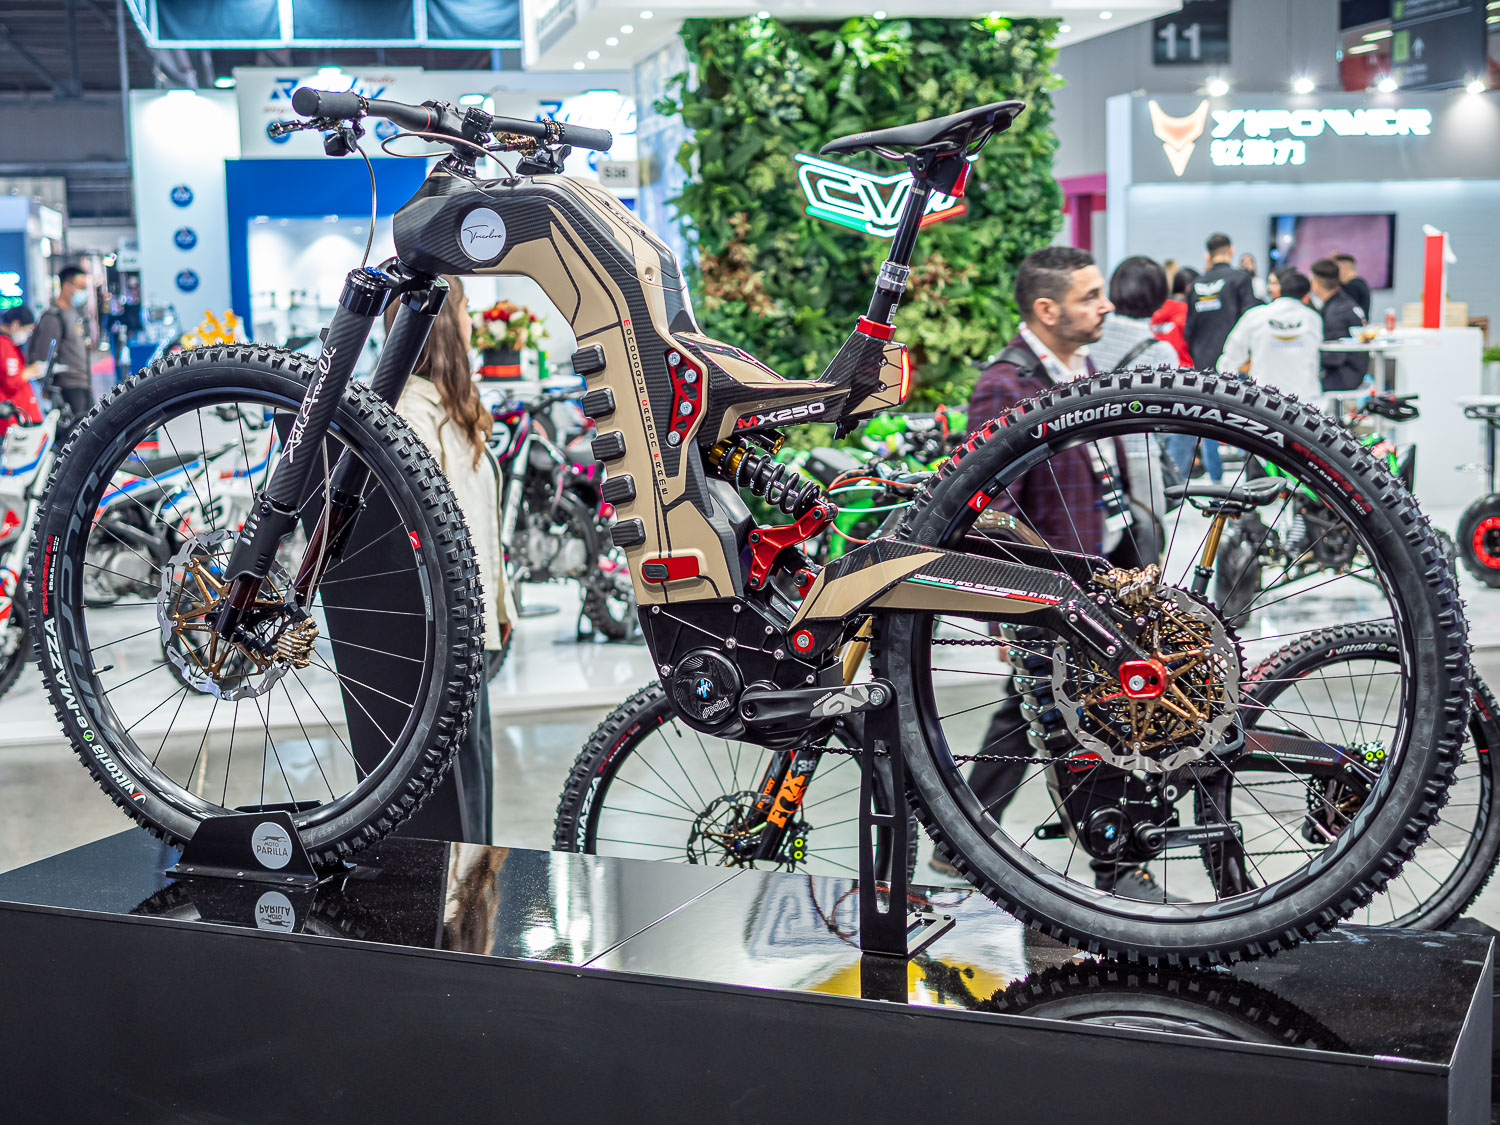 Moto Parilla Tricolore eMTB futuristica - bici